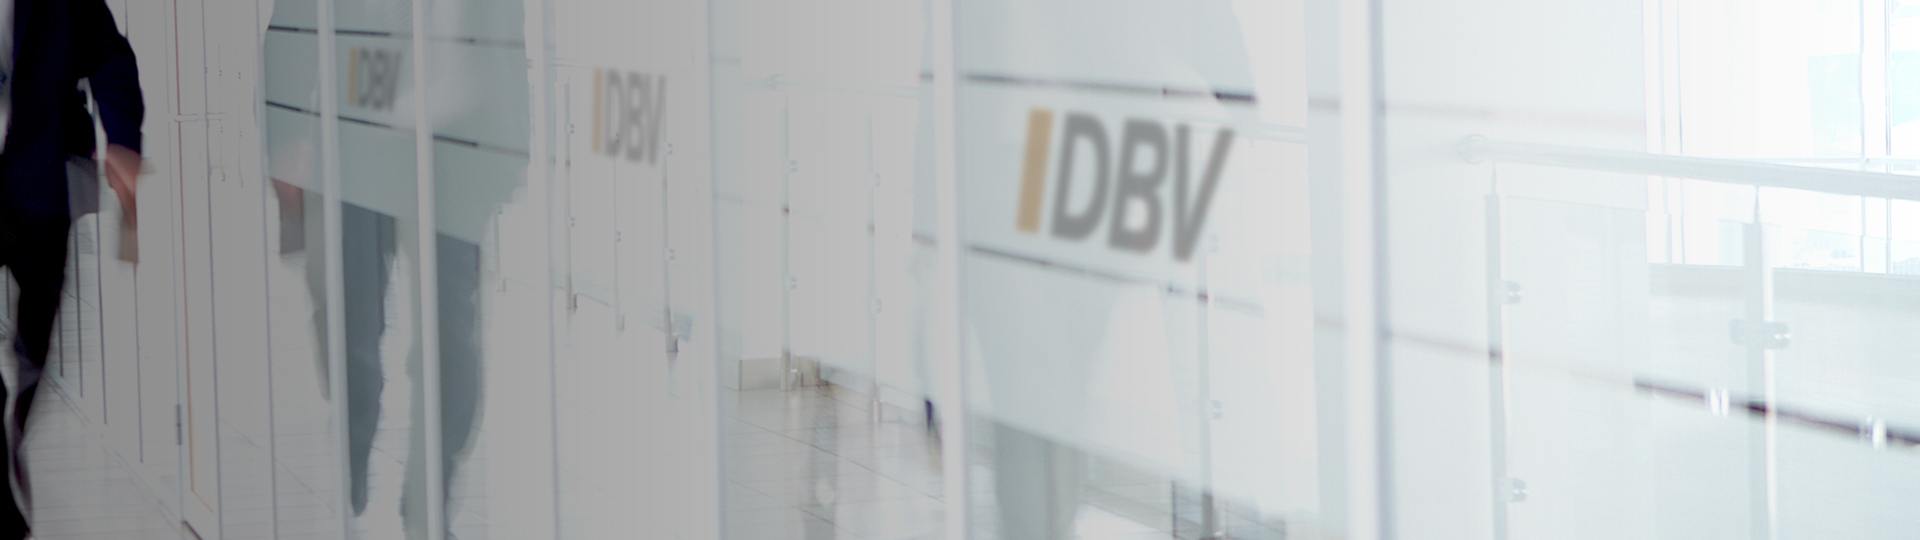 DBV Frankfurt am Main Stein oHG Inh. Florian Link Dominic Friebe | Dienstunfähigkeitsversicherung